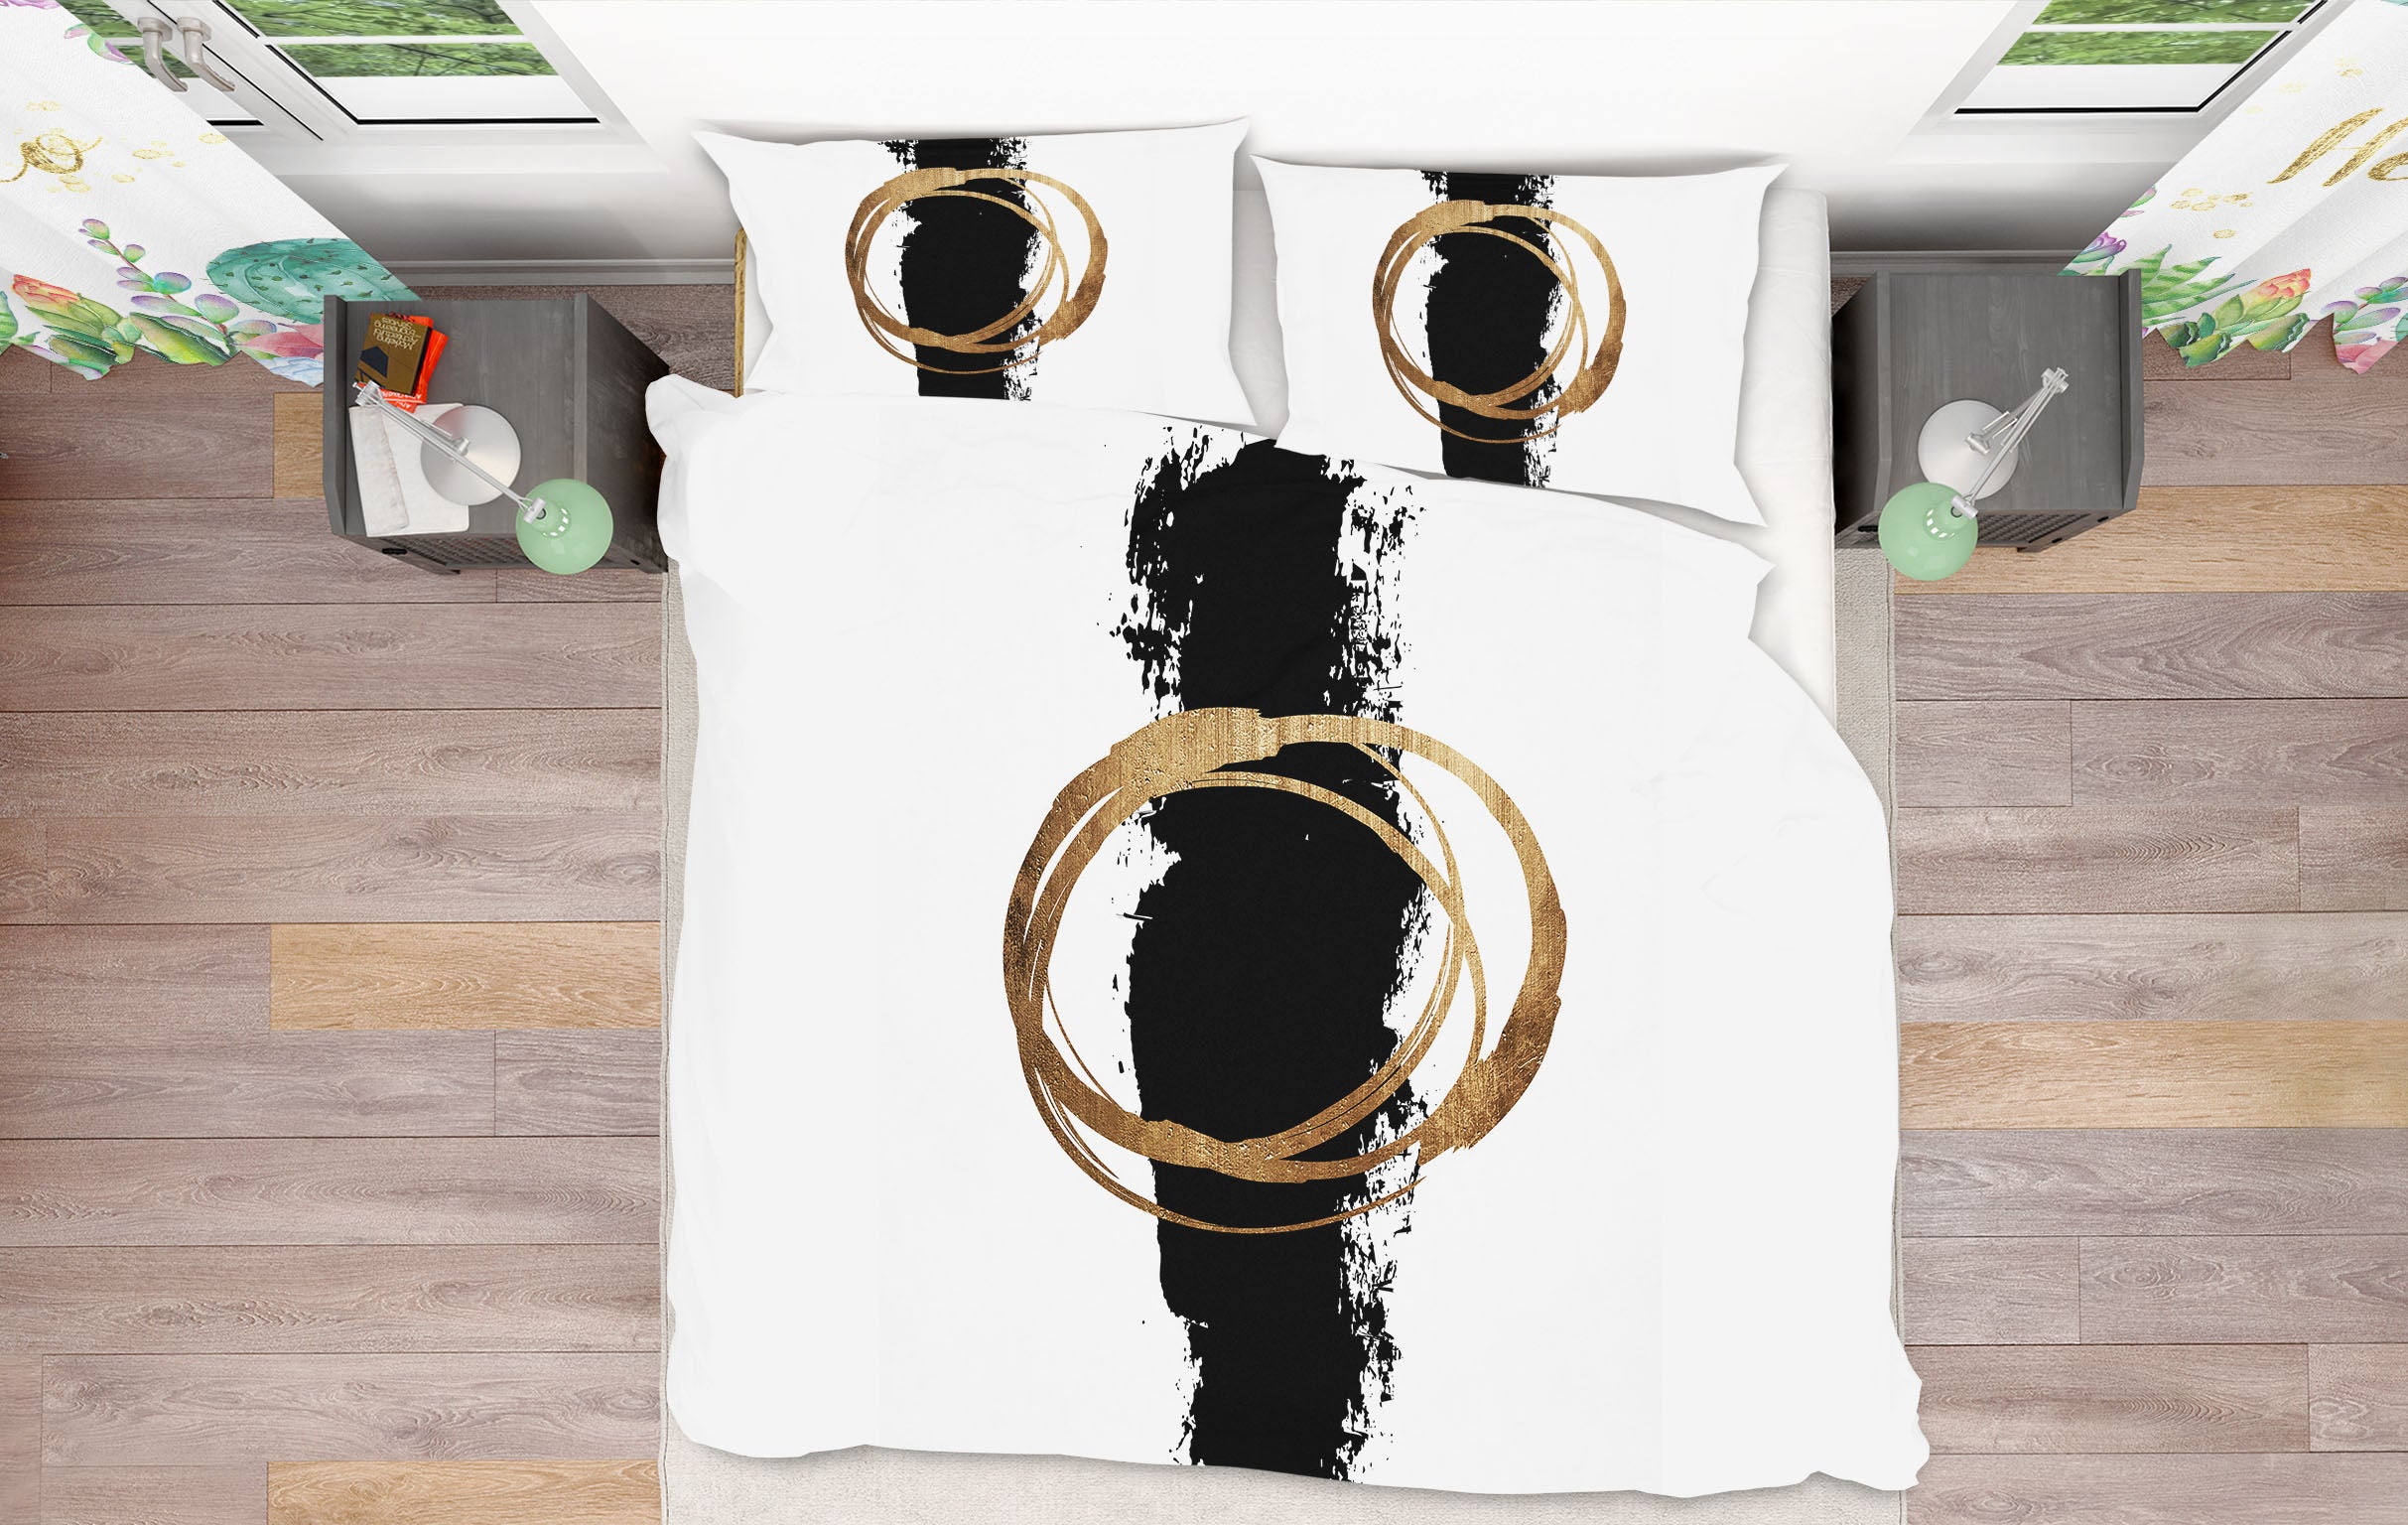 3D Golden Circle 126 Boris Draschoff Bedding Bed Pillowcases Quilt